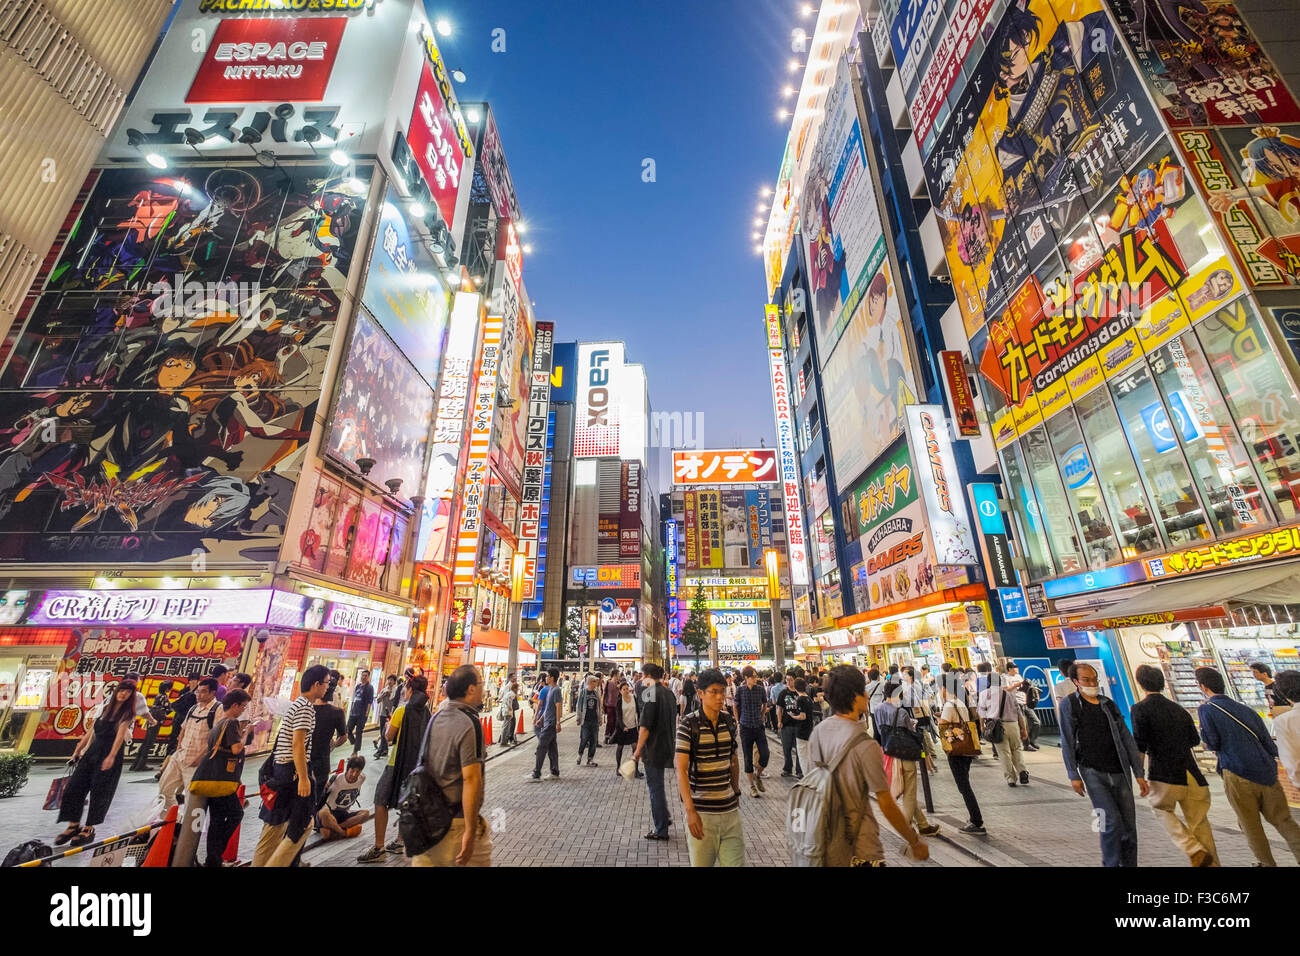 Werbetafeln auf Ladenfronten in Akihabara, bekannt als Electric Town oder Geek Stadt Verkauf Manga Spiele und Videos in Tokio Japan Stockfoto